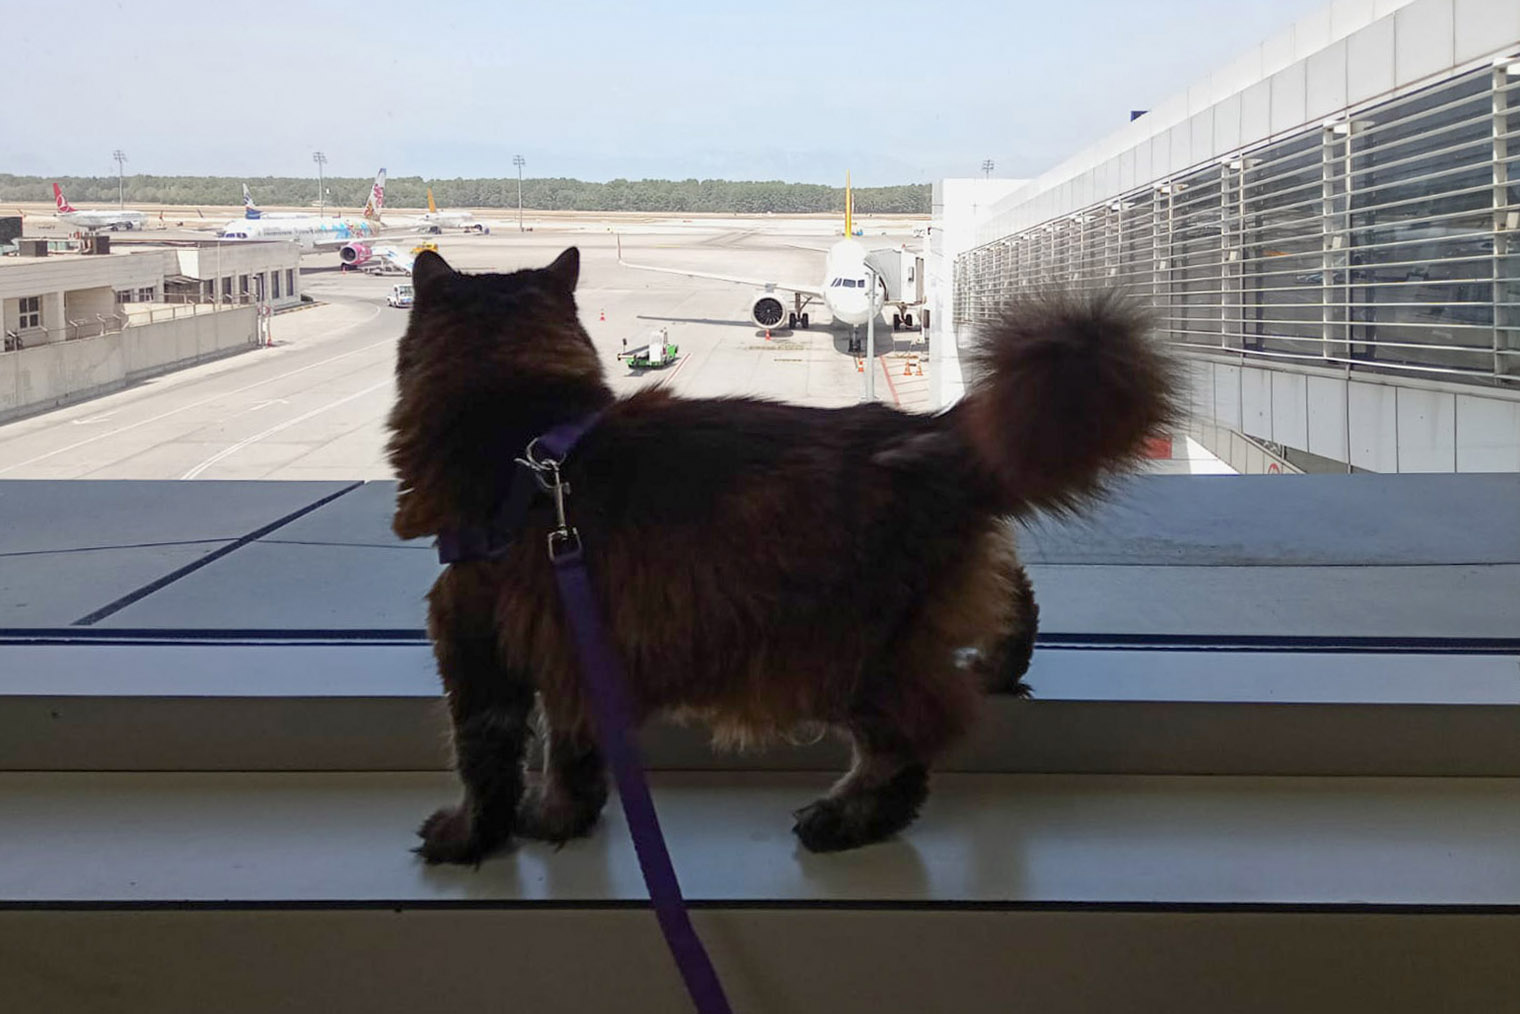 Пуся — путешественница со стажем. В аэропорту она любит залипать на самолеты, а в самолете — смотреть на облака